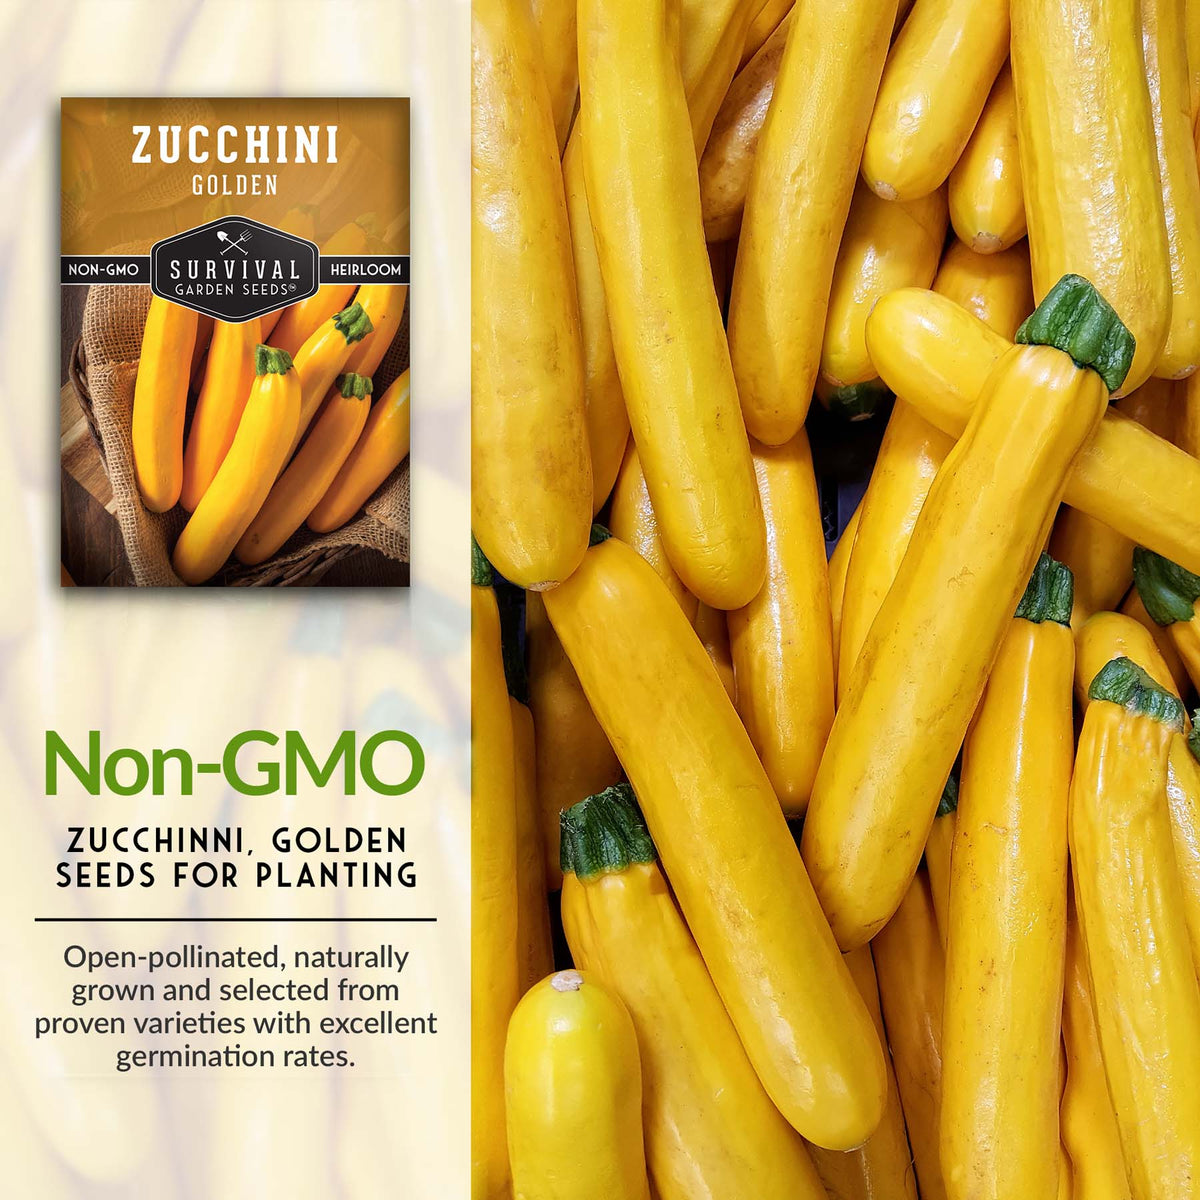 Non-GMO seeds